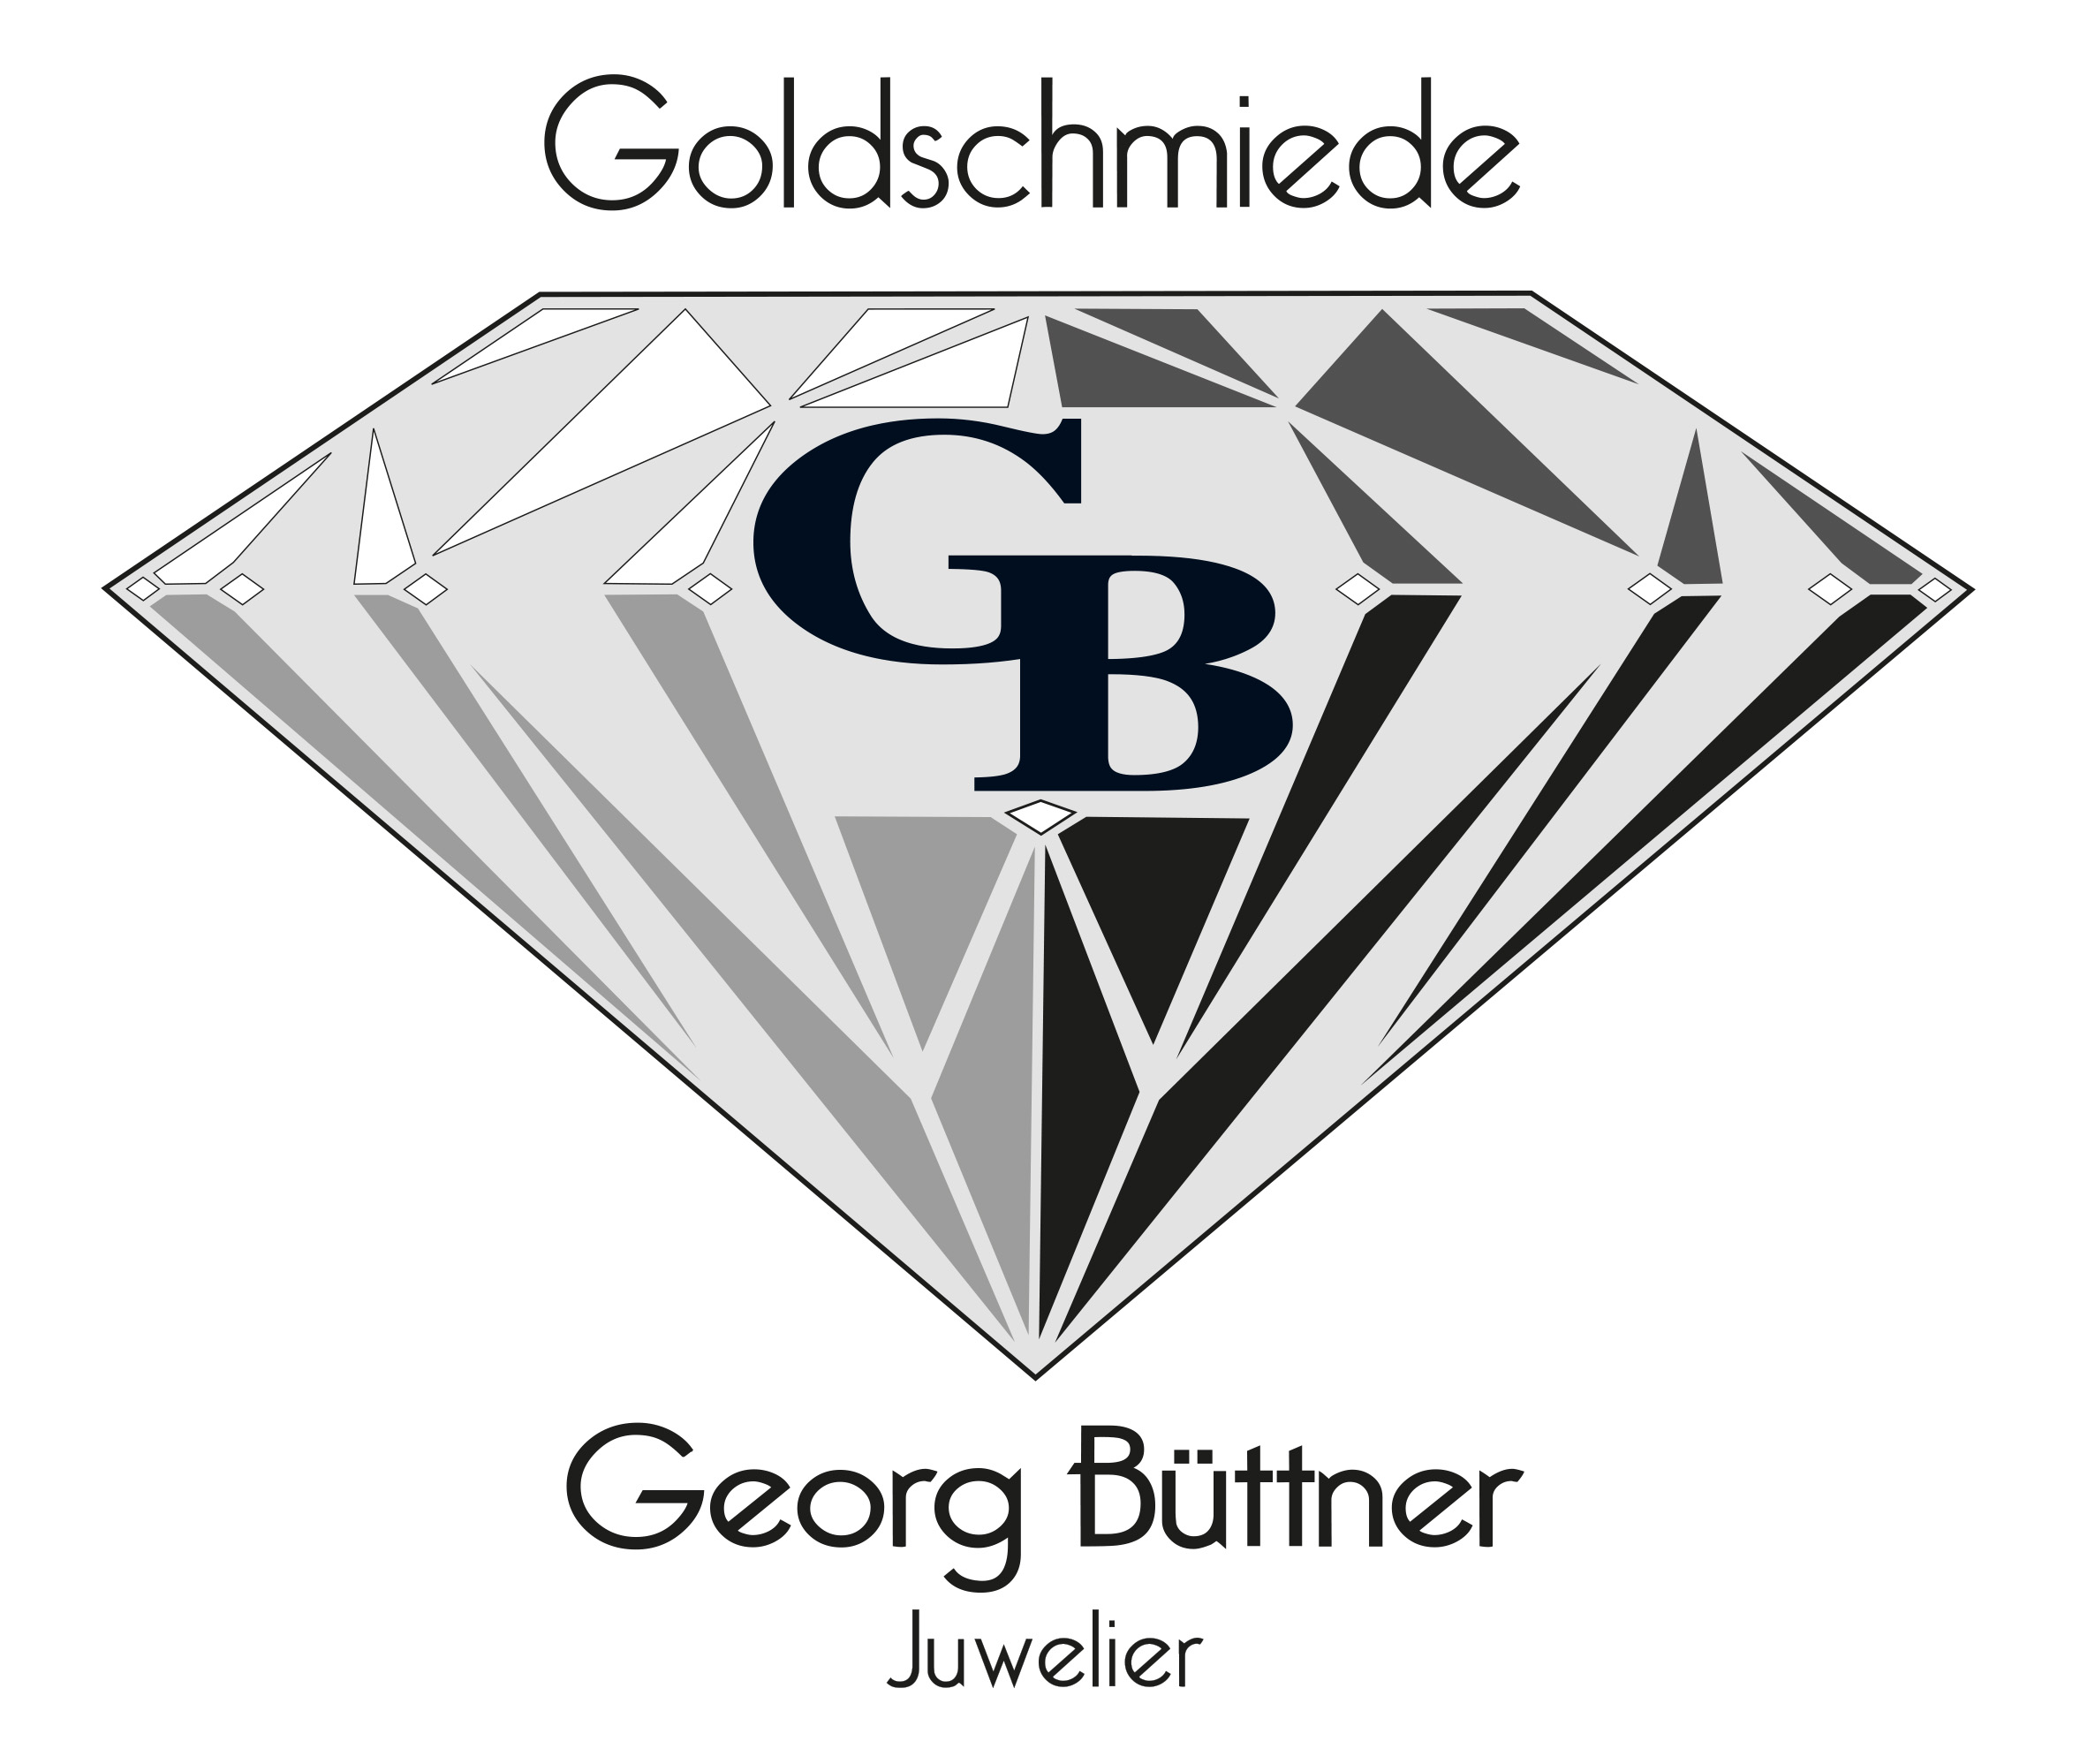 Goldschmiede Georg Büttner